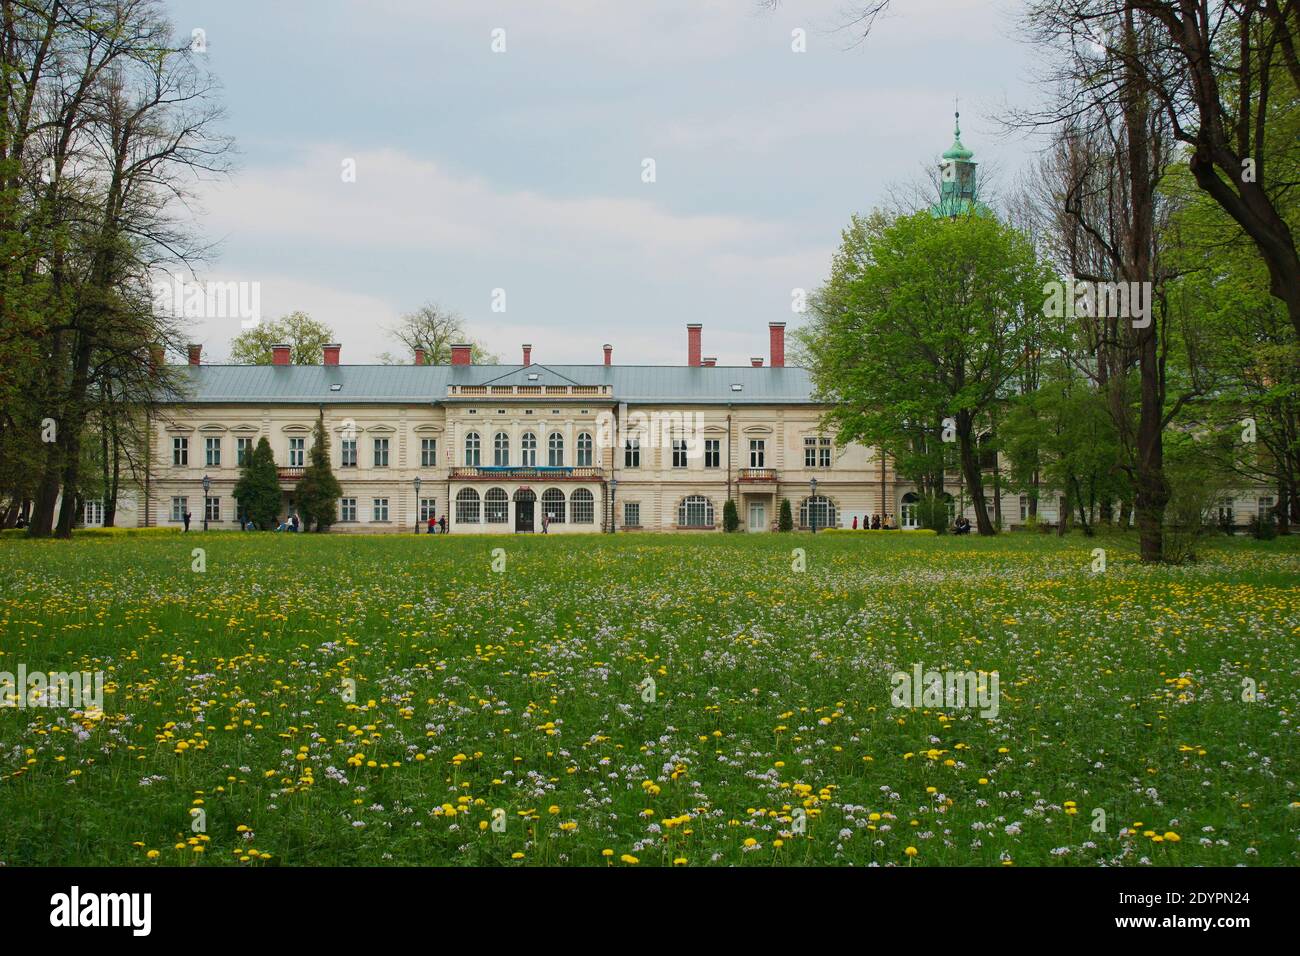 Schloss Habsburg in Zywiec, Residenz der kaiserlichen Familie Habsburger, derzeit öffentliches Eigentum, Polen Stockfoto